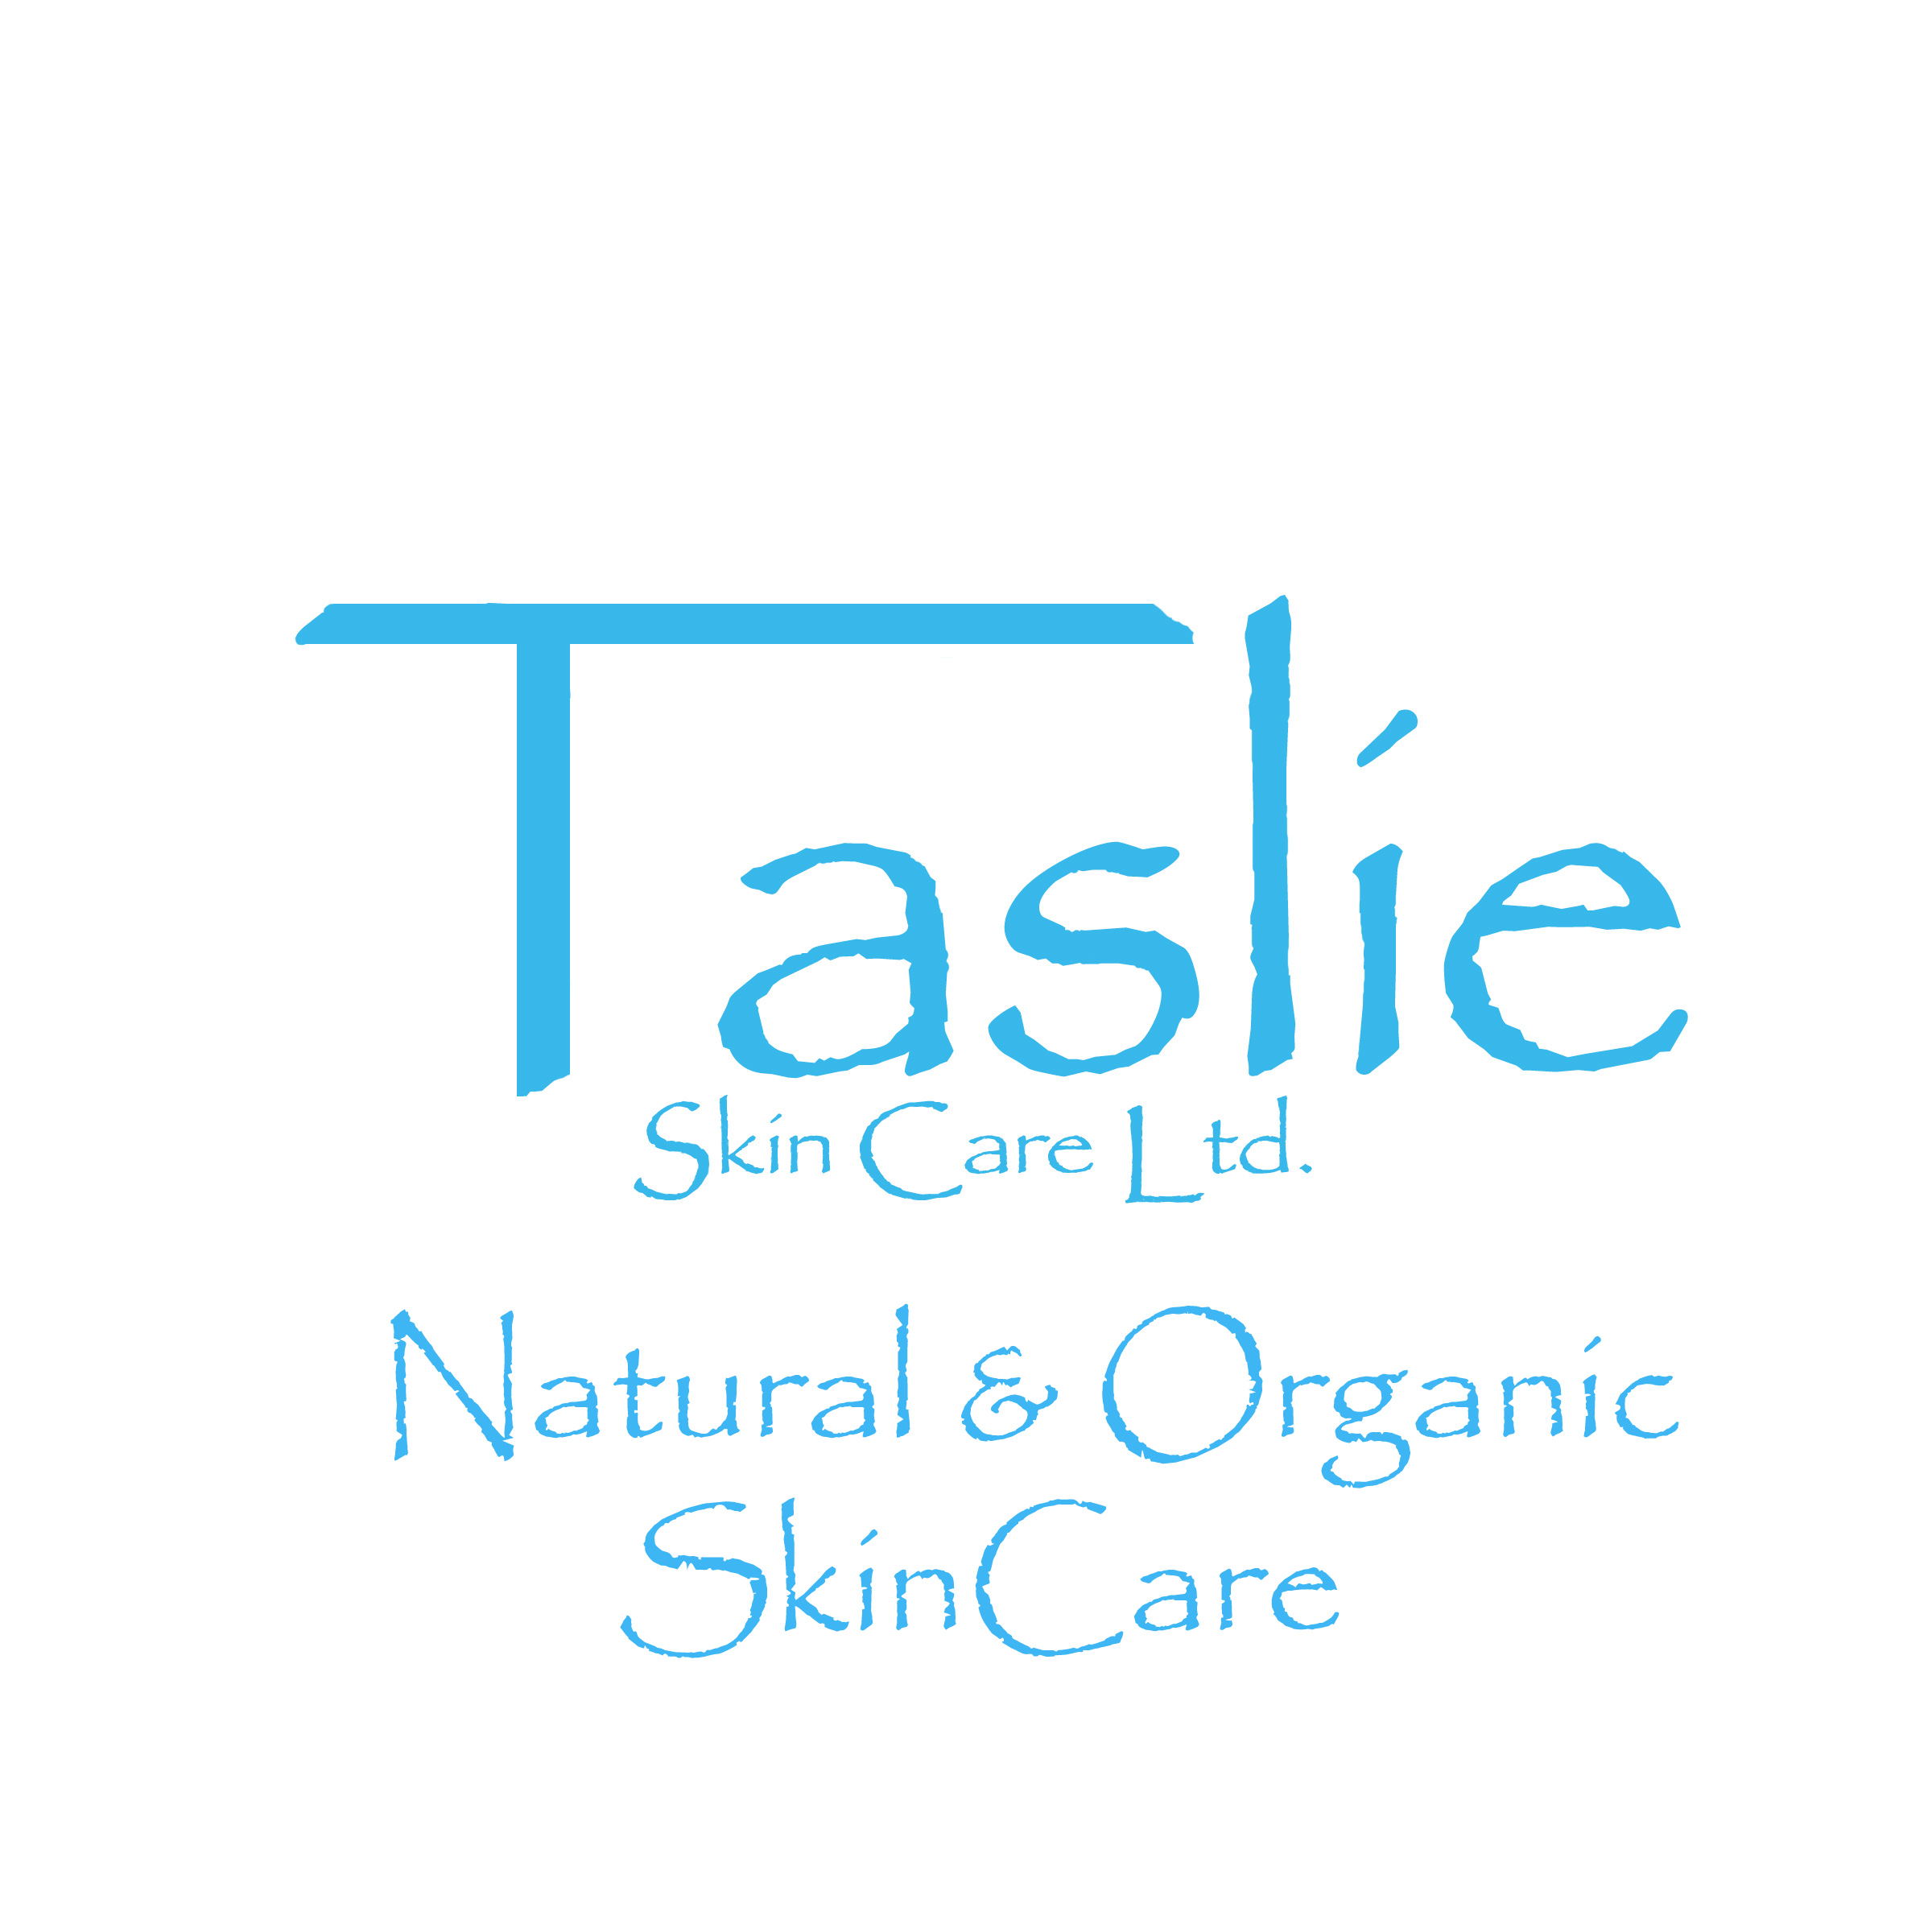 Taslie Skin Care Ltd.